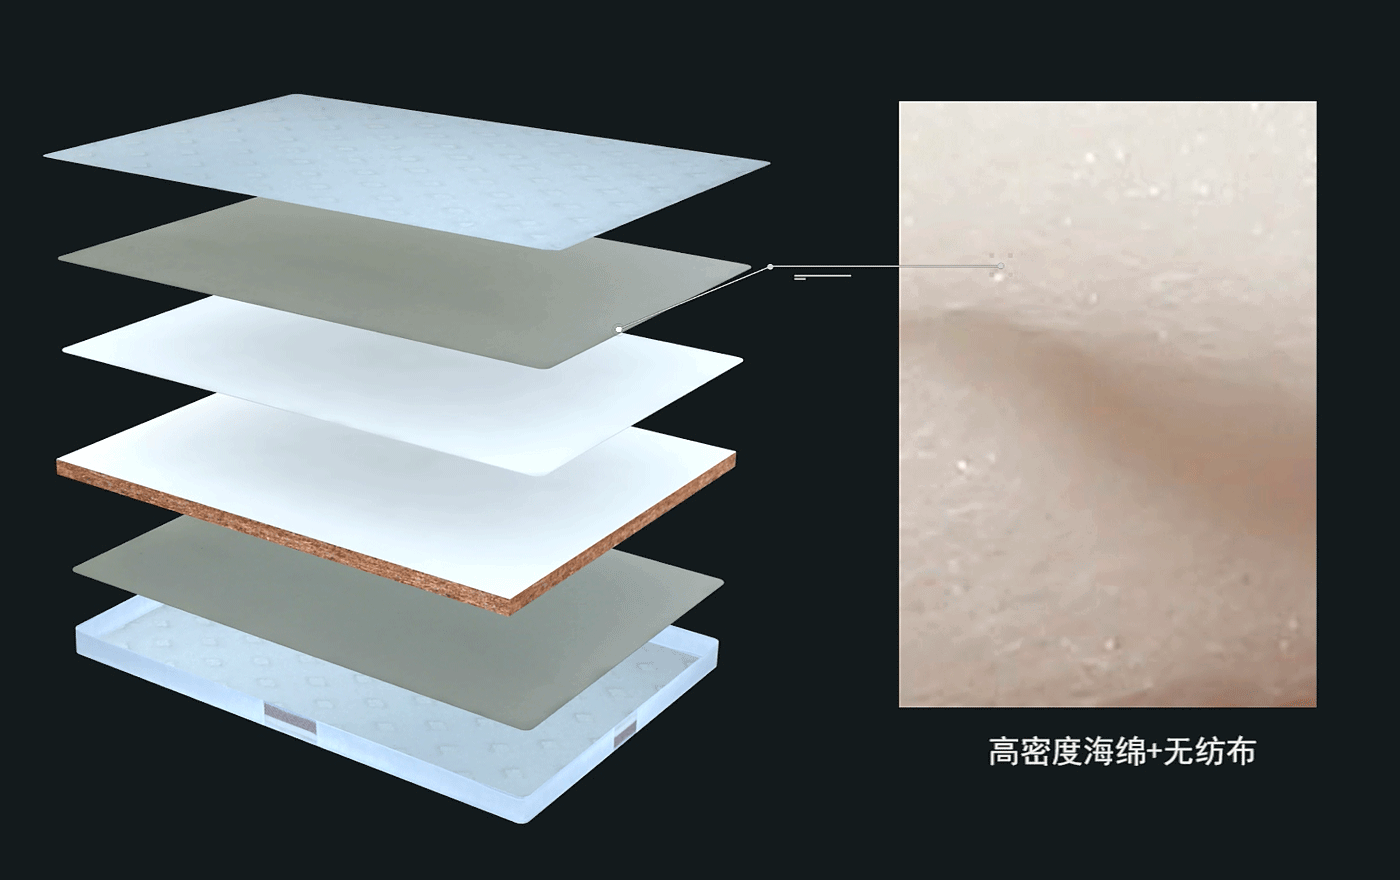 吉思亚麻乳胶奢华床垫系列J-10HBR--高密度海绵+无纺布